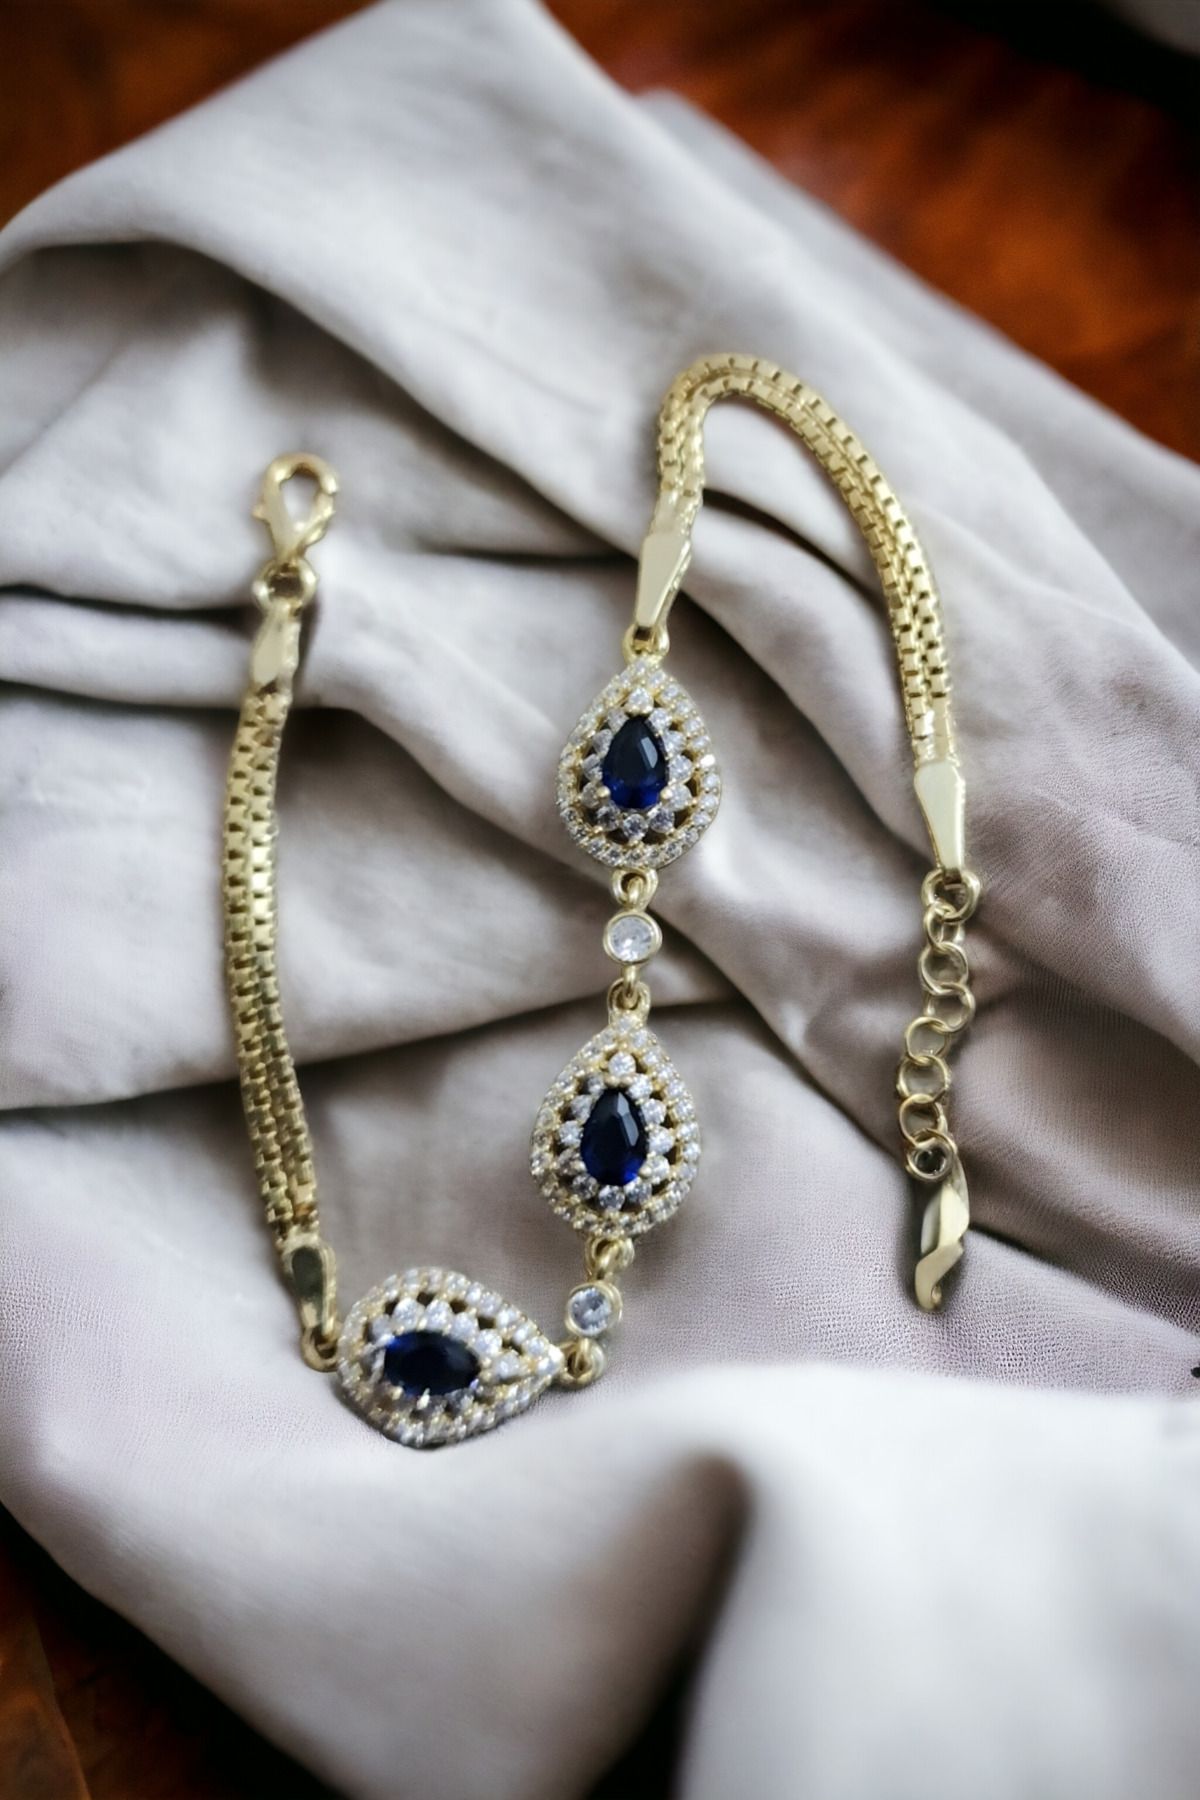 La'Vanti Designs Mavi Pırlanta Taşlı Swarovski Pırlantalı 925 Ayar Gümüş Üzeri 22 Ayar Altın Kaplama Kadın Bileklik